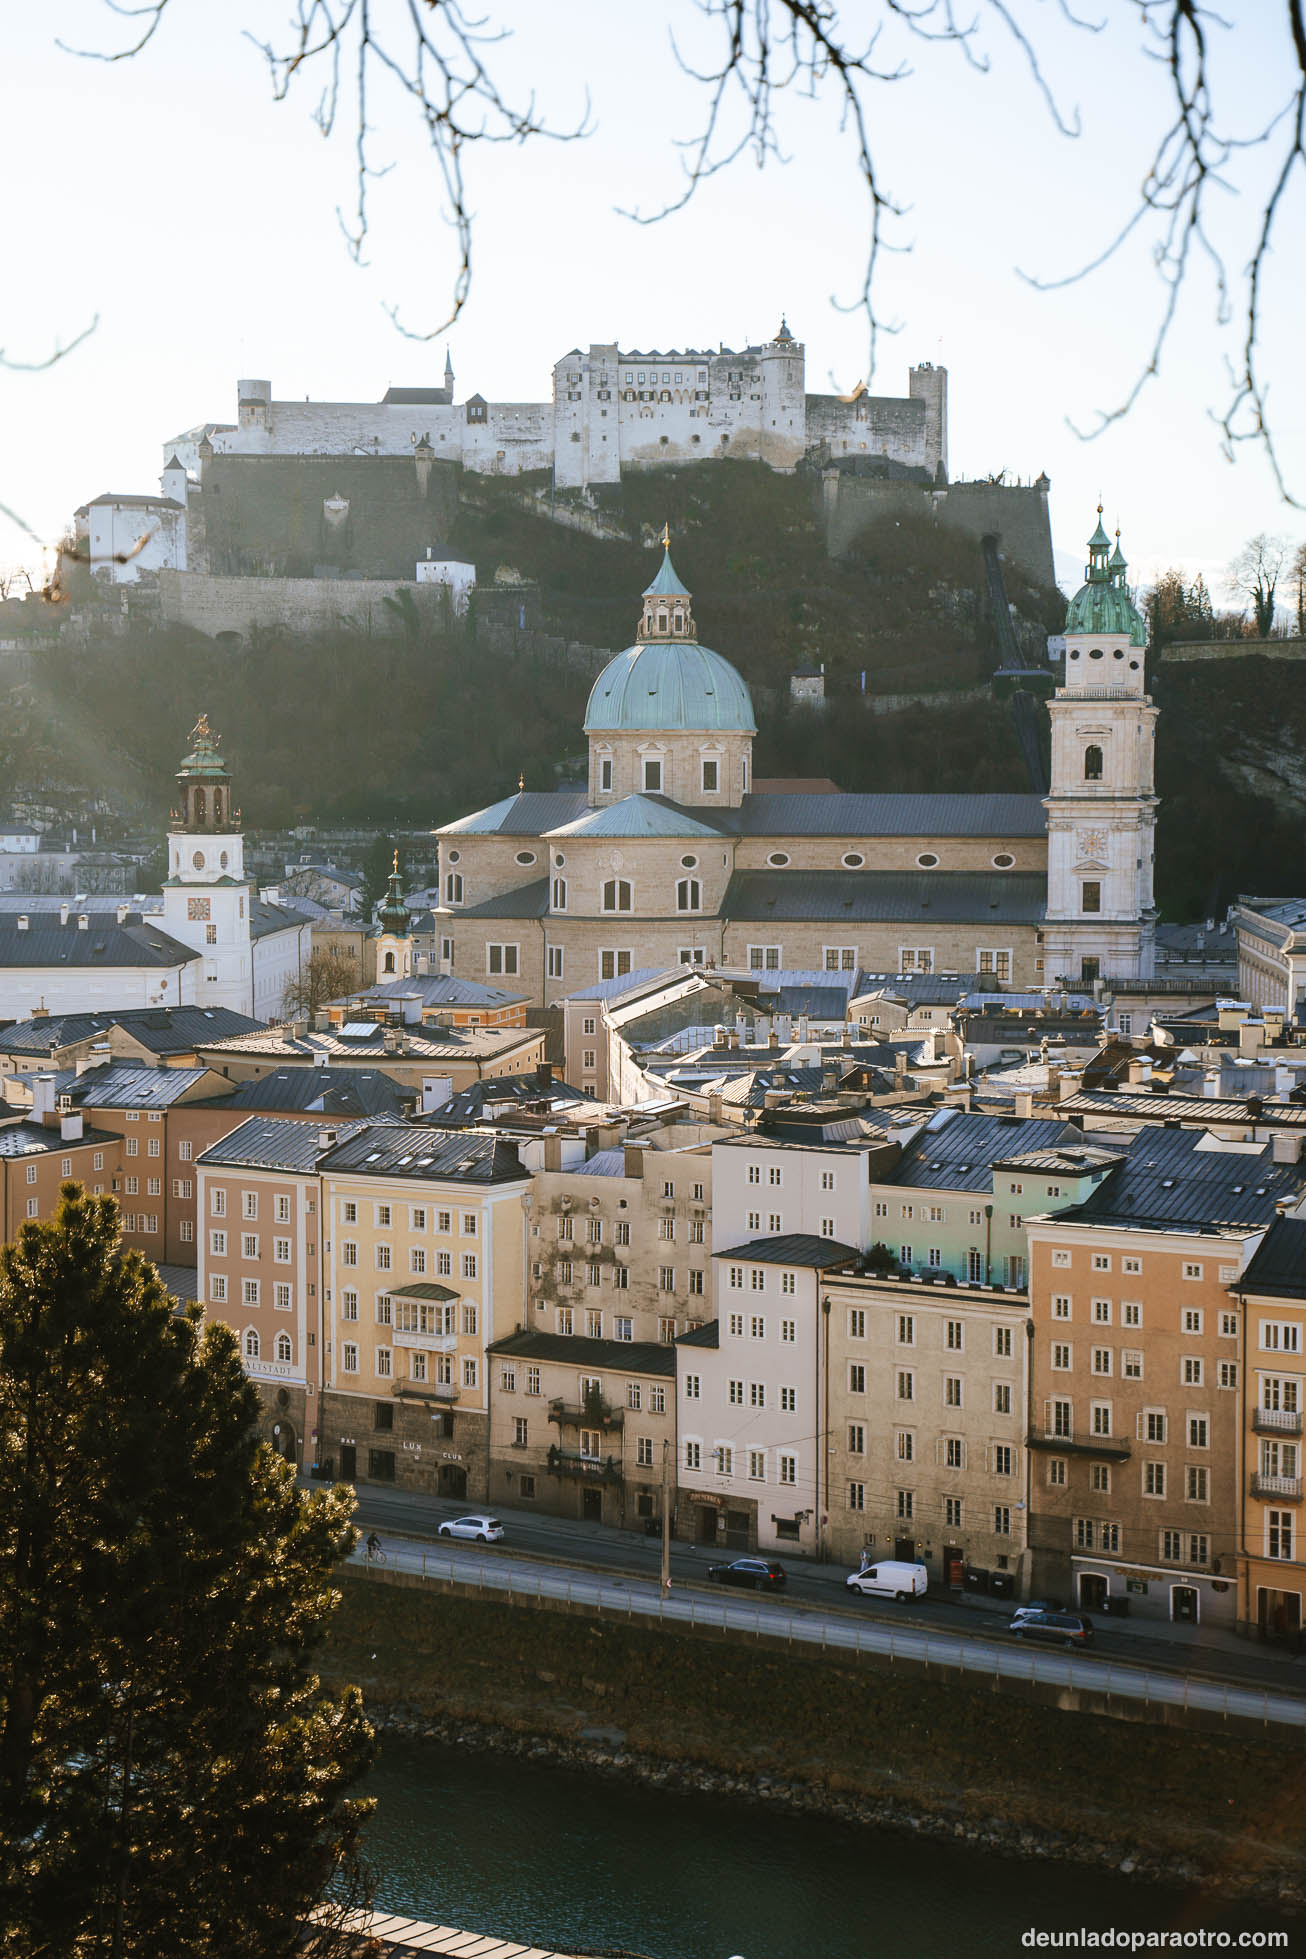 Esta fortaleza medieval es la mejor conservada de Europa y, junto con el centro histórico, de lo mejor que ver en Salzburgo